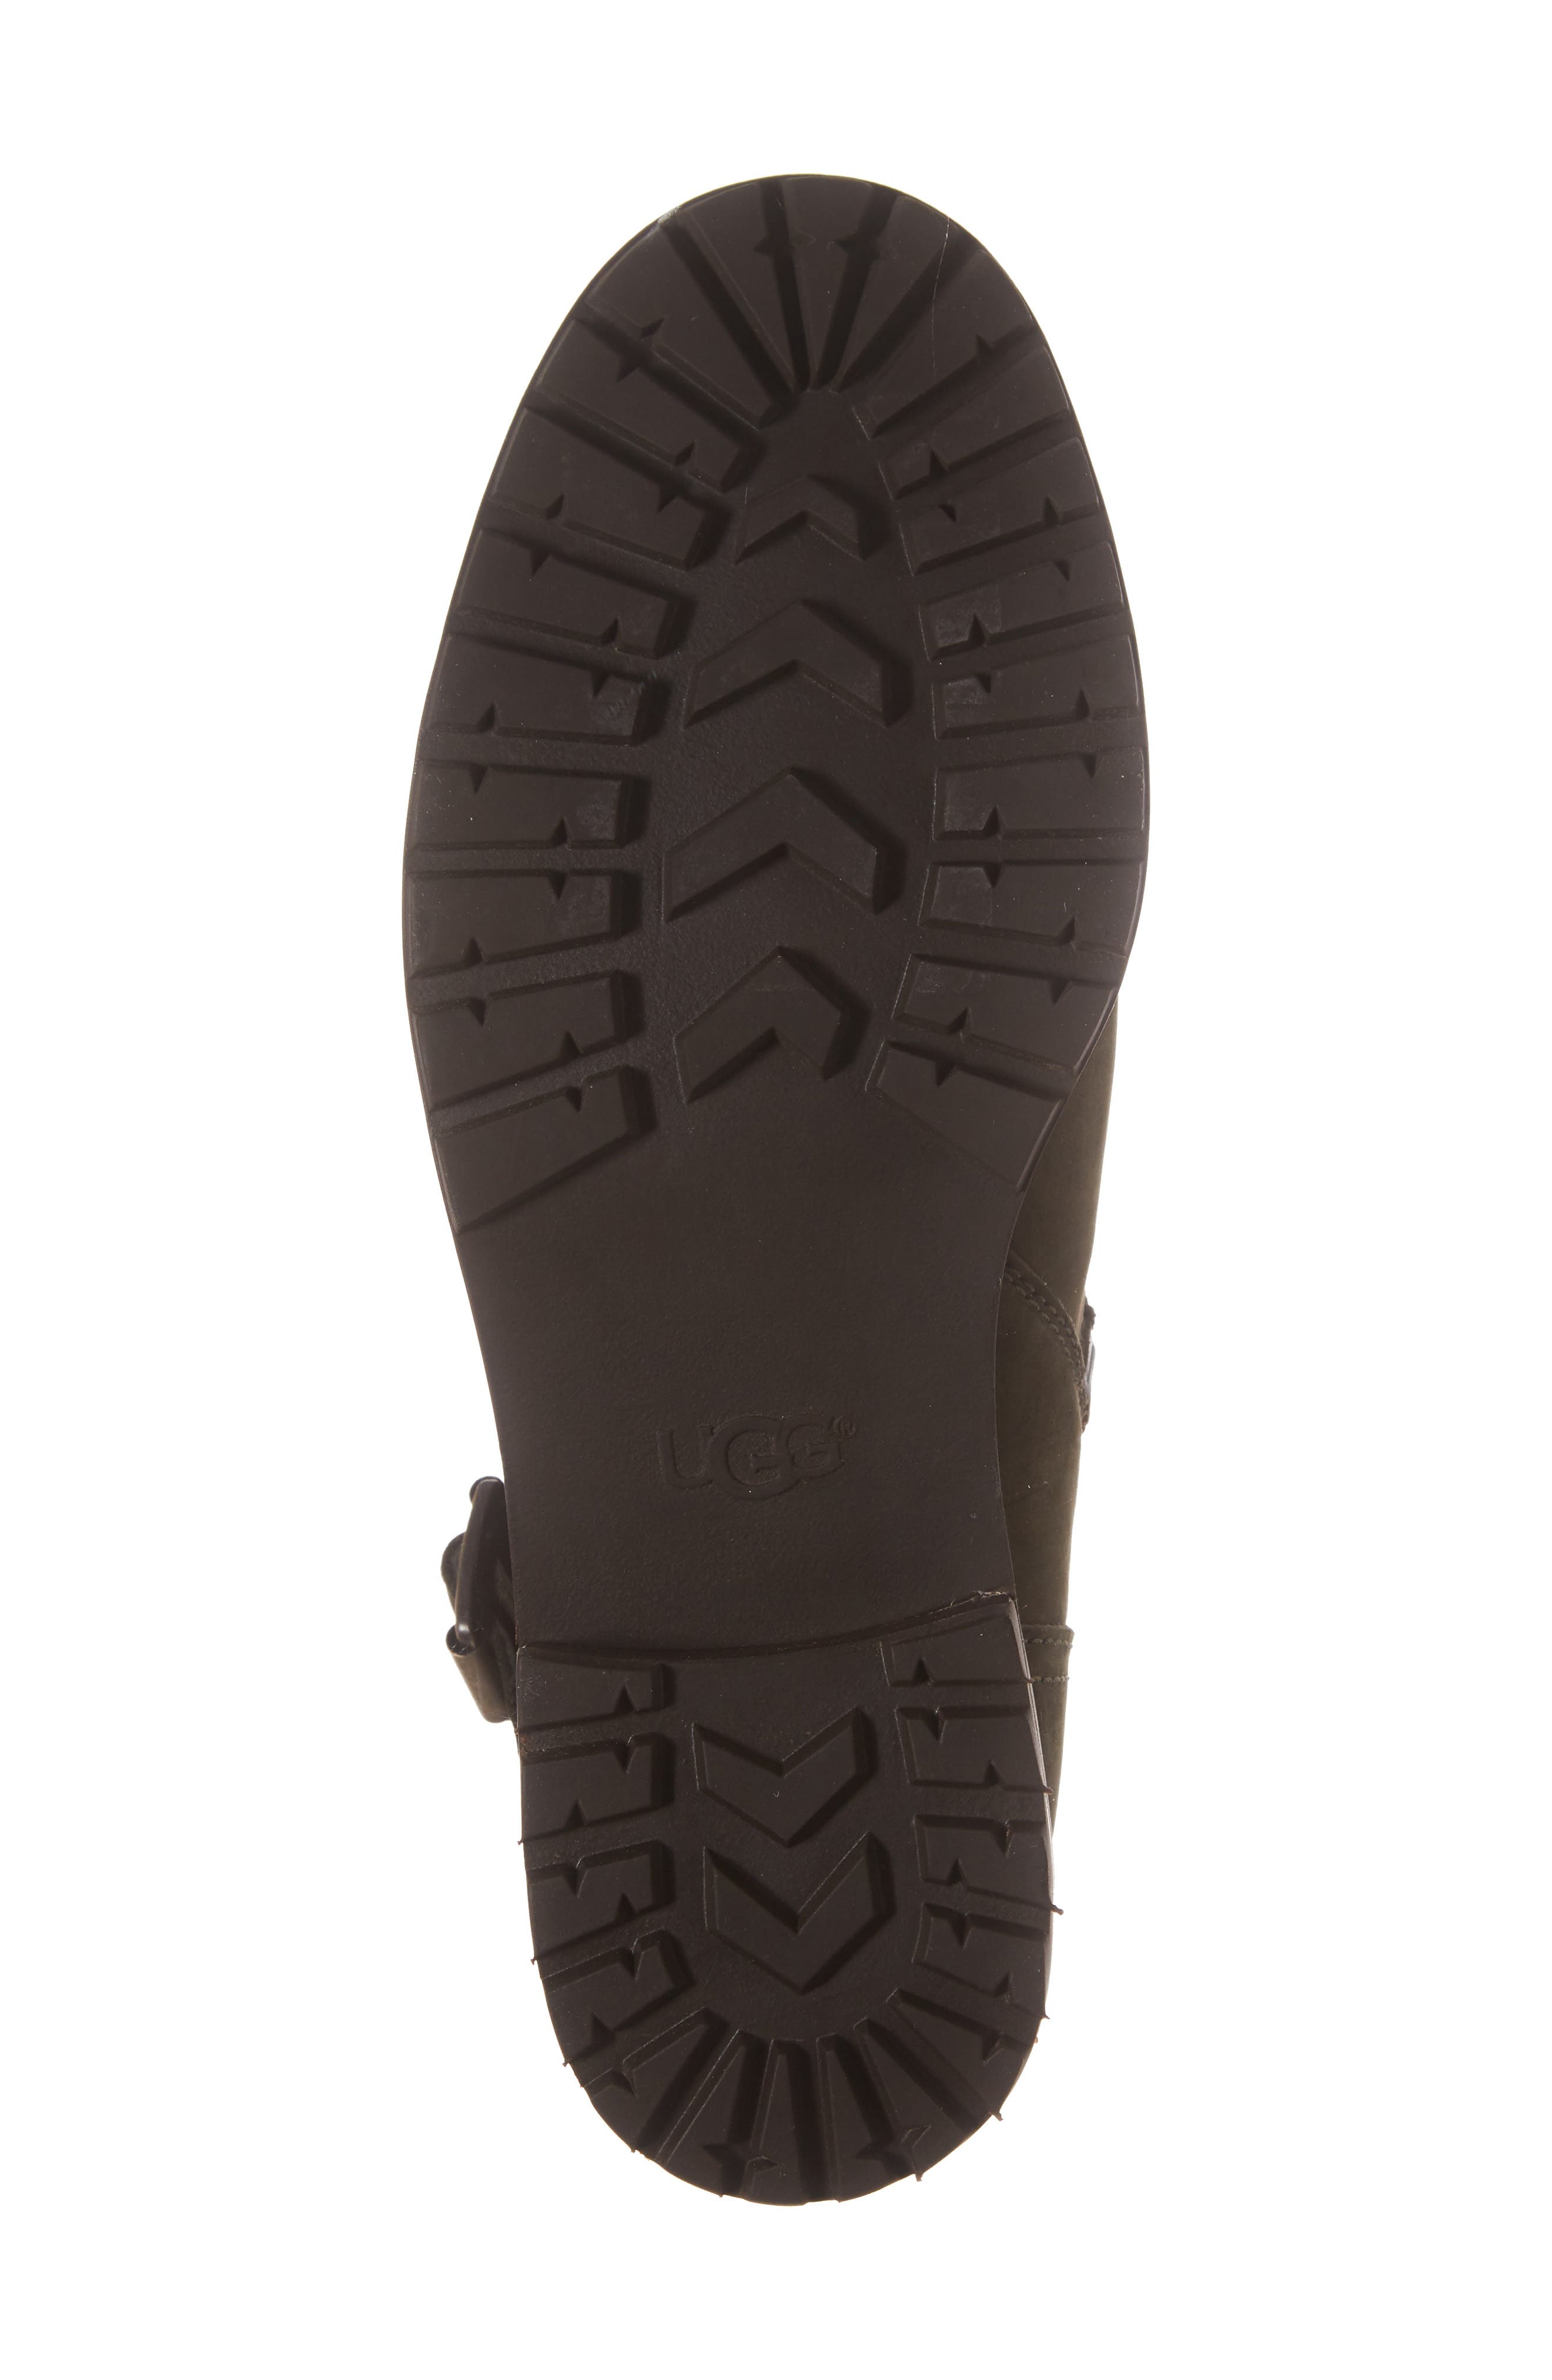 ugg niels waterproof genuine shearling lined boot